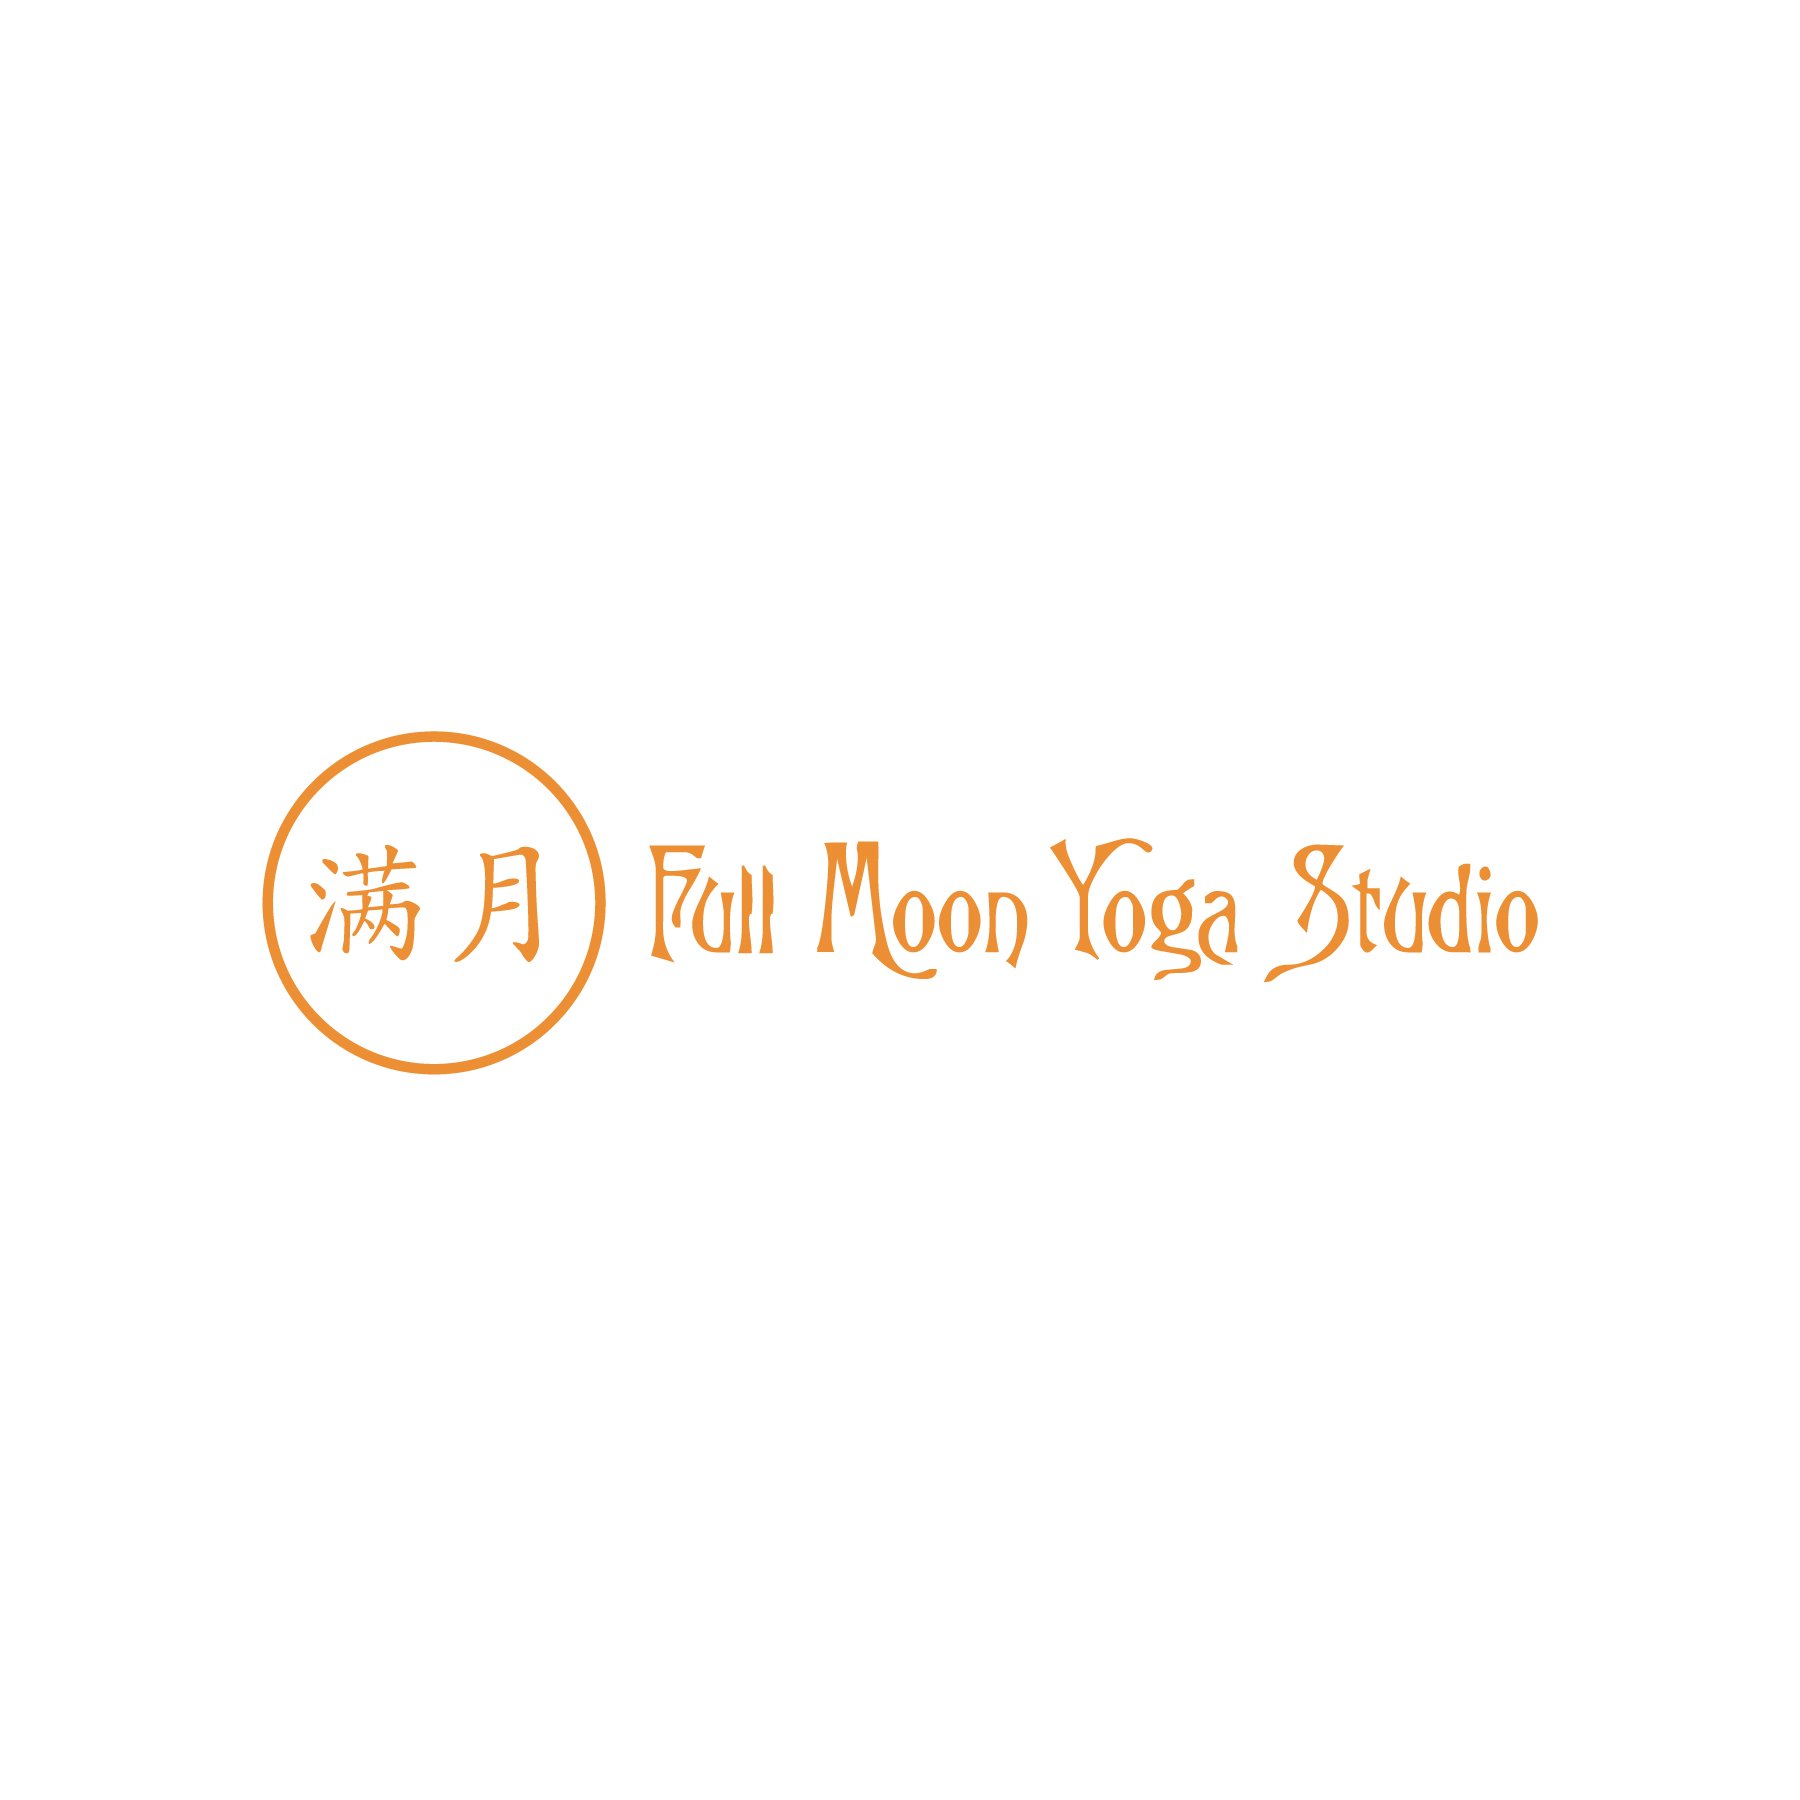 Portfolio_Logos_Full Moon Yoga.jpg